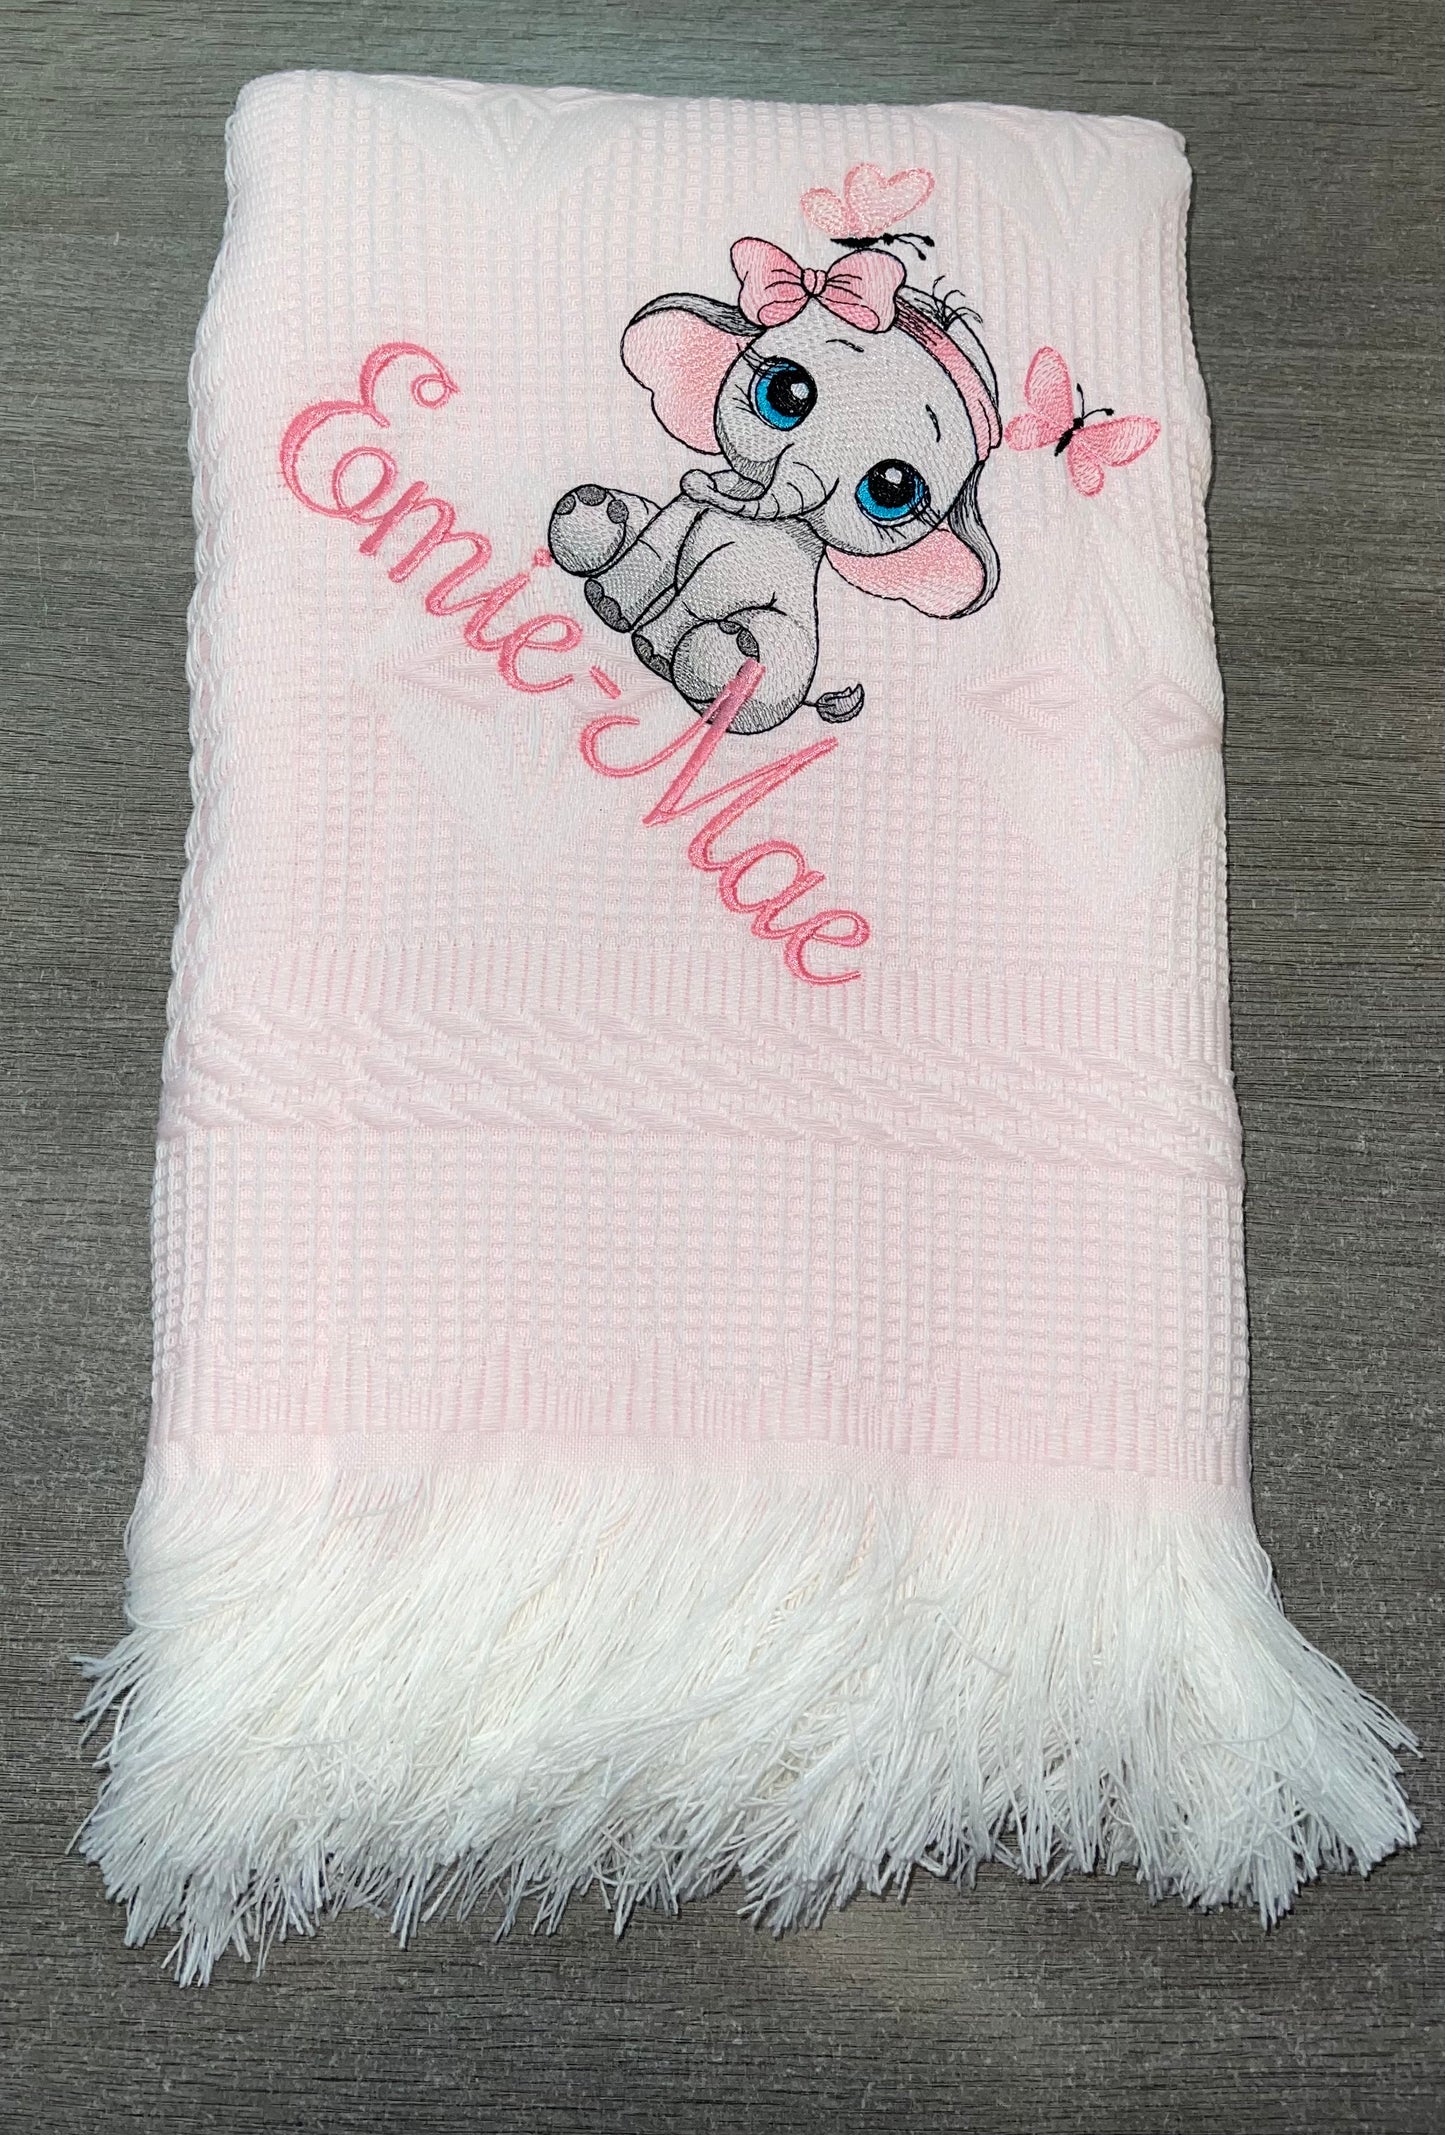 Personalised pink Baby Ellie design shawl